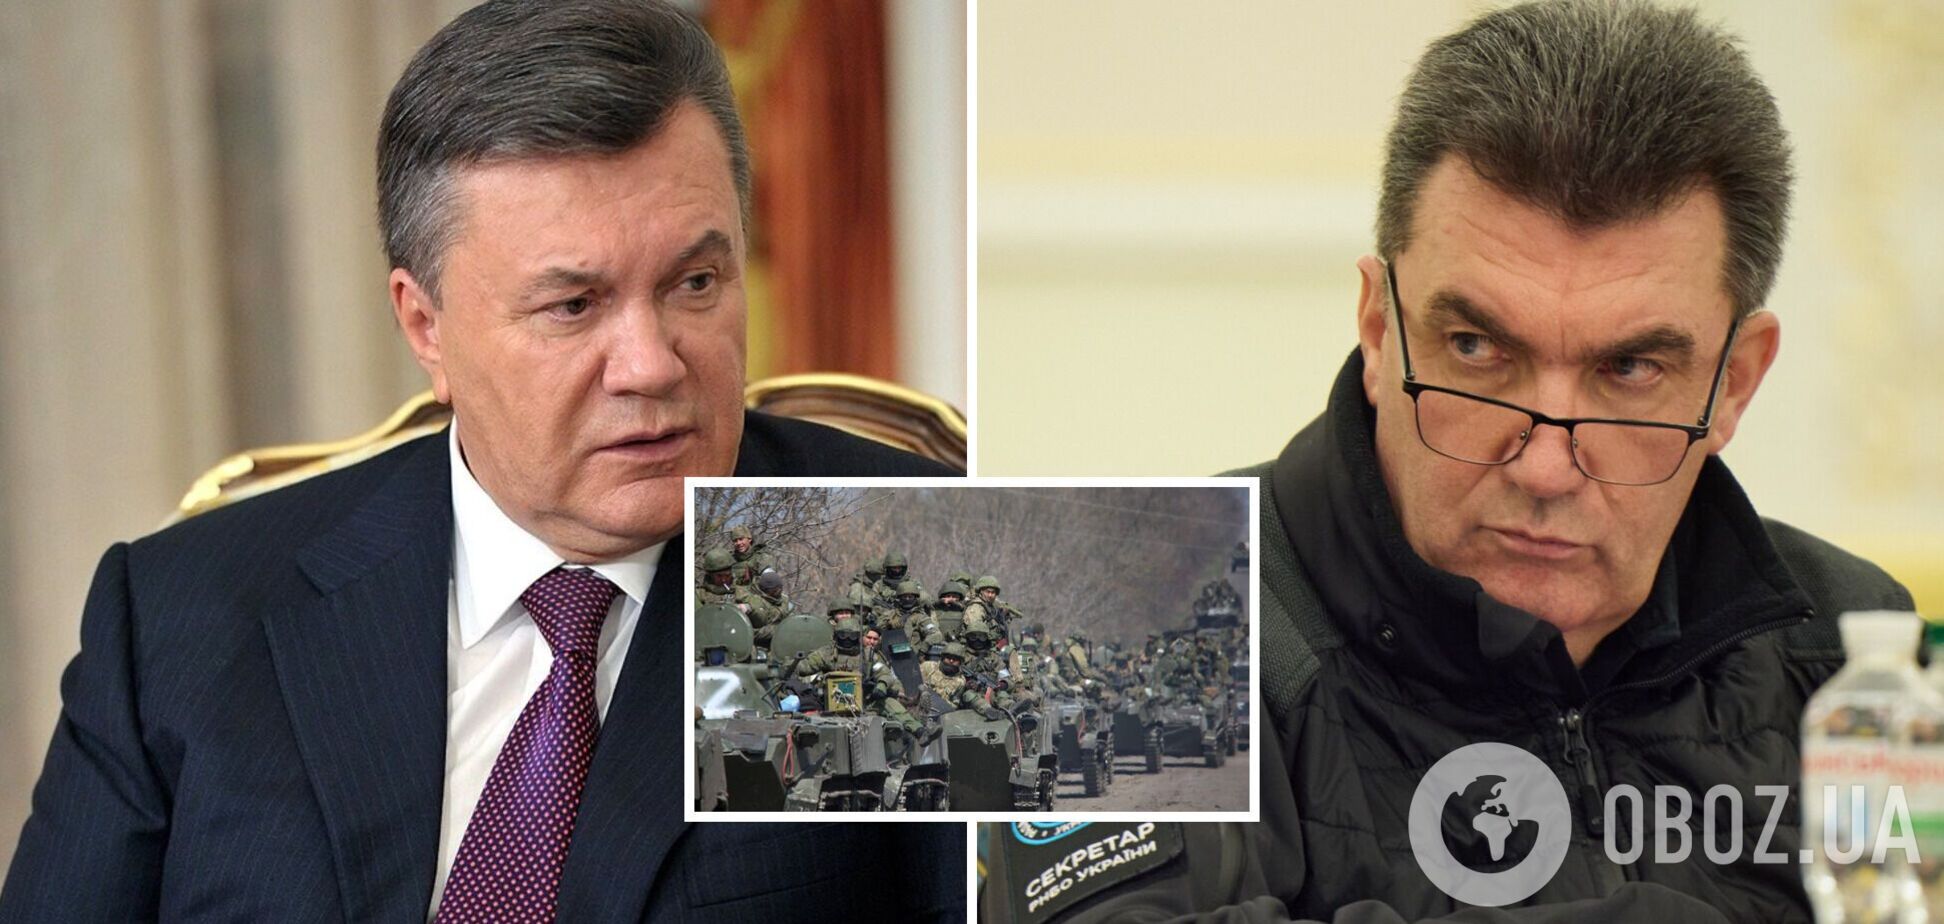 Янукович 7 марта уже ждал в Минске, это был дедлайн Кремля по захвату половины Украины, – Данилов